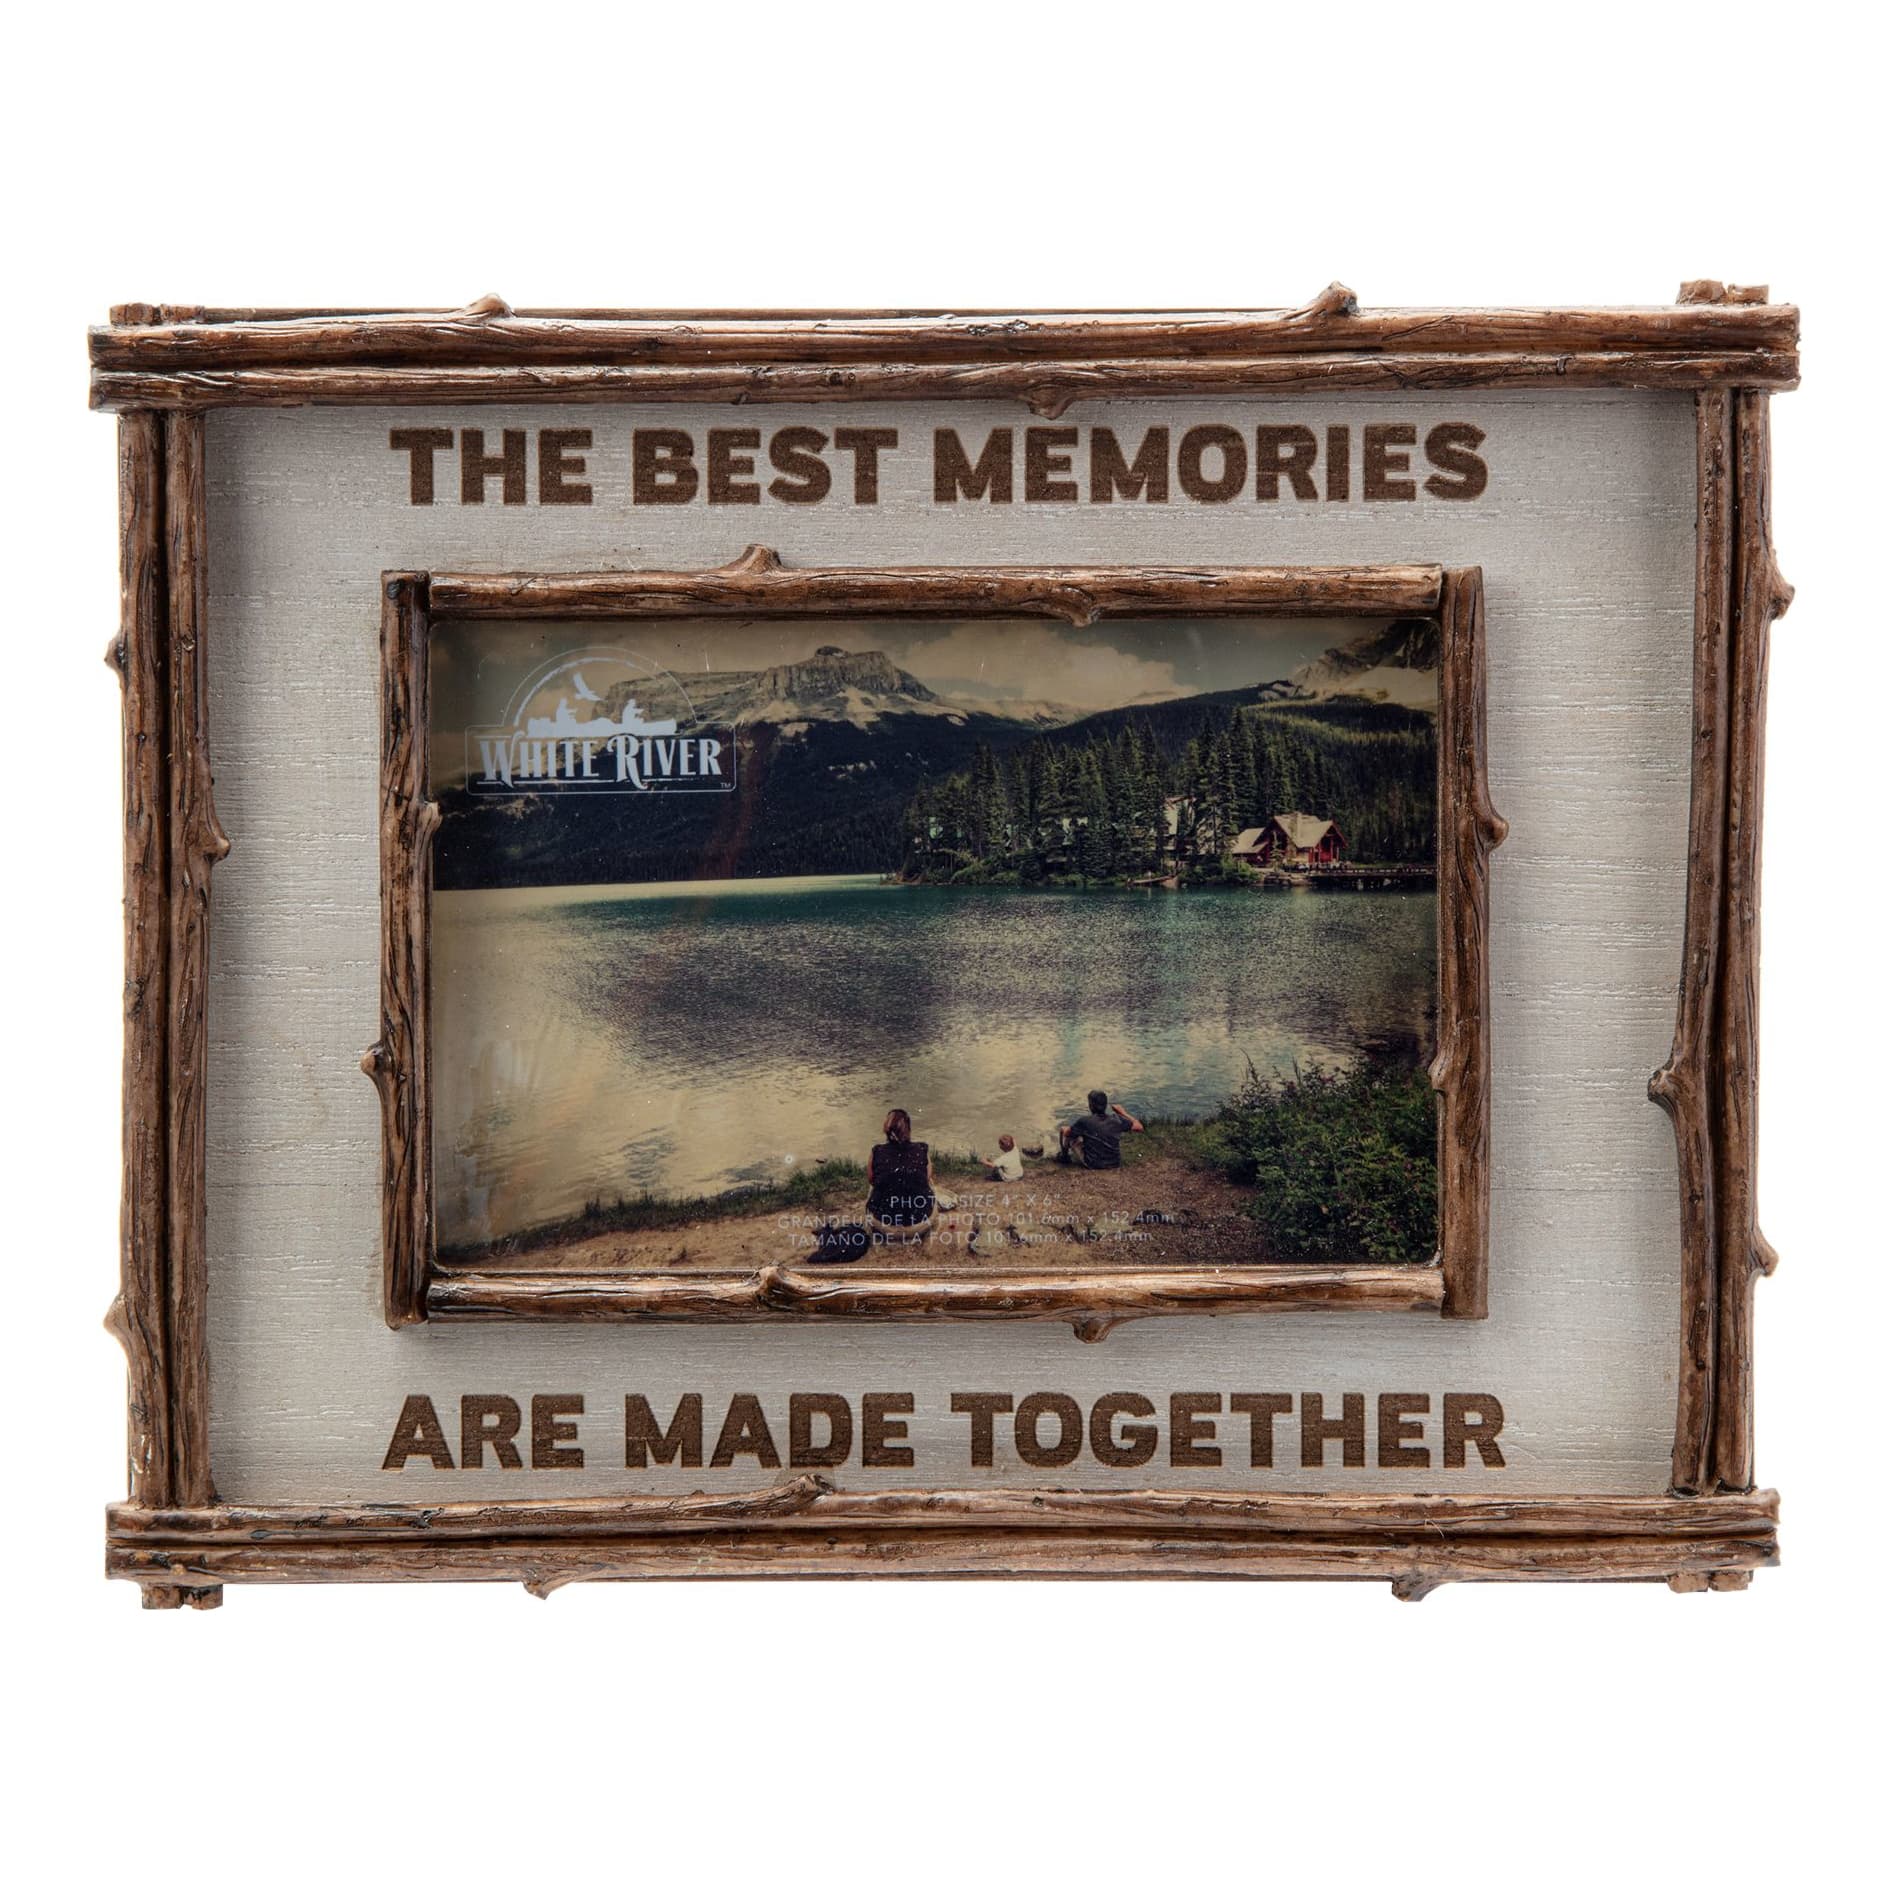 White River™ Photo Frame - Best Memories